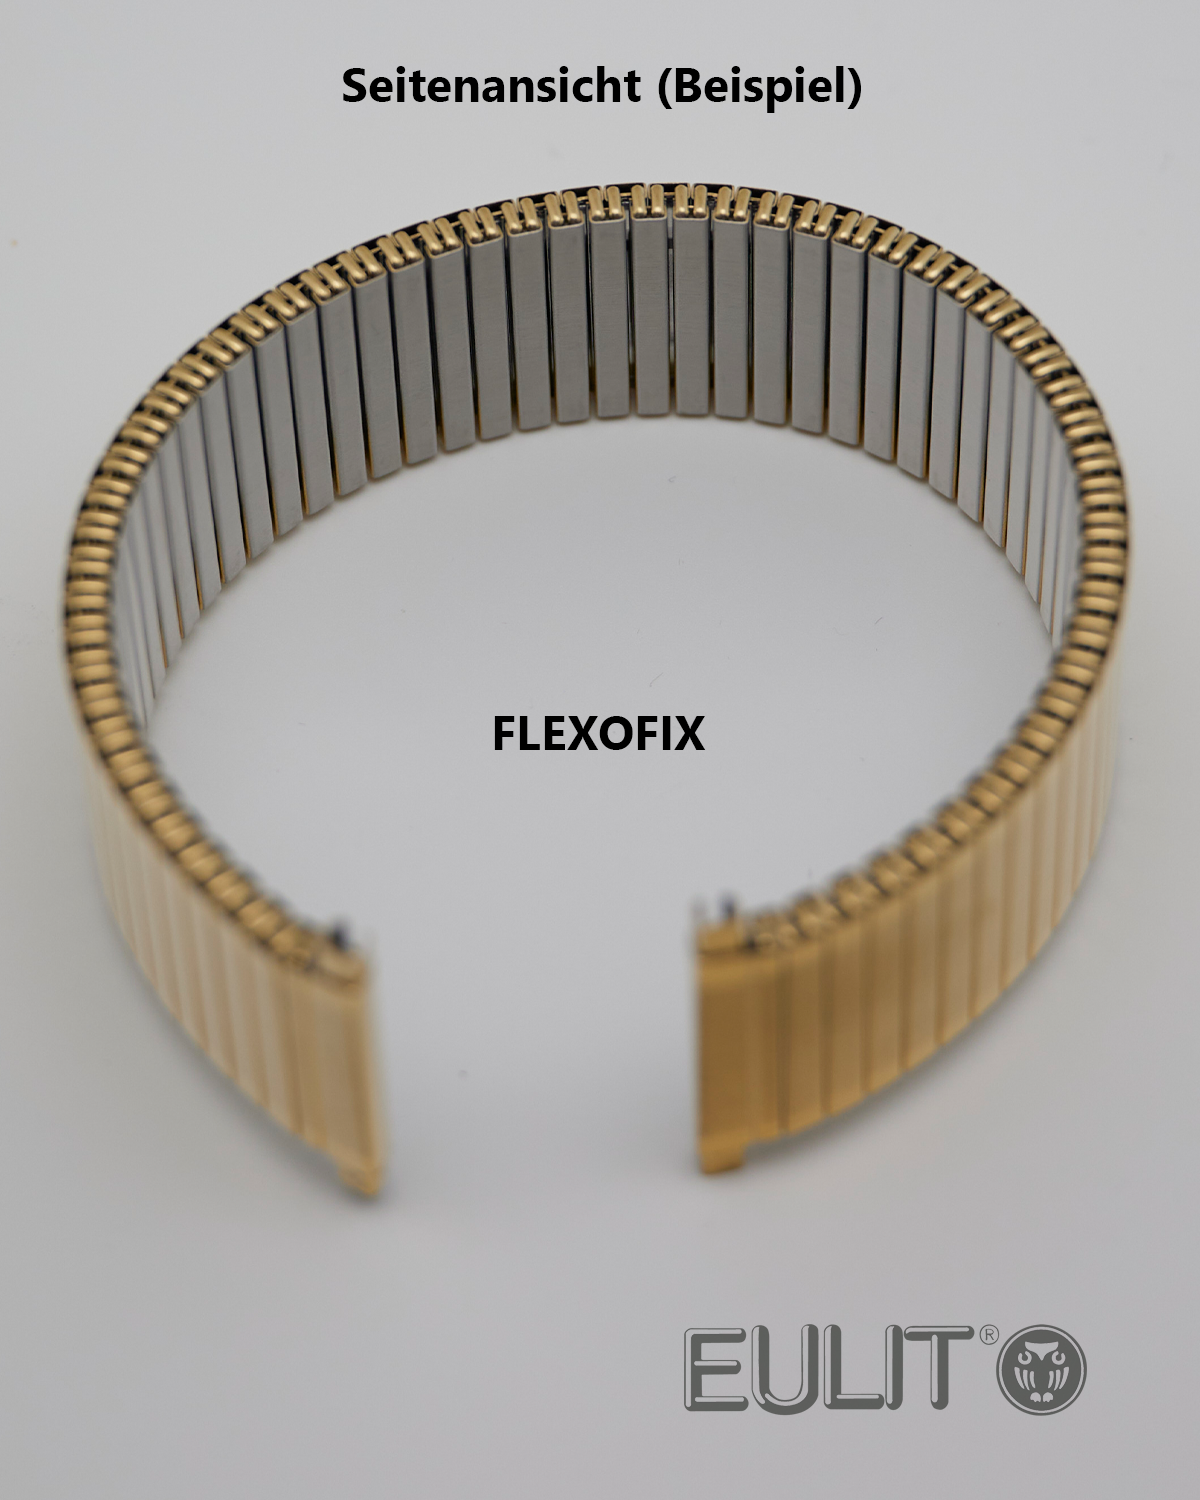 76-425004 EULIT FELXOFIX 12-14 mm vergoldet